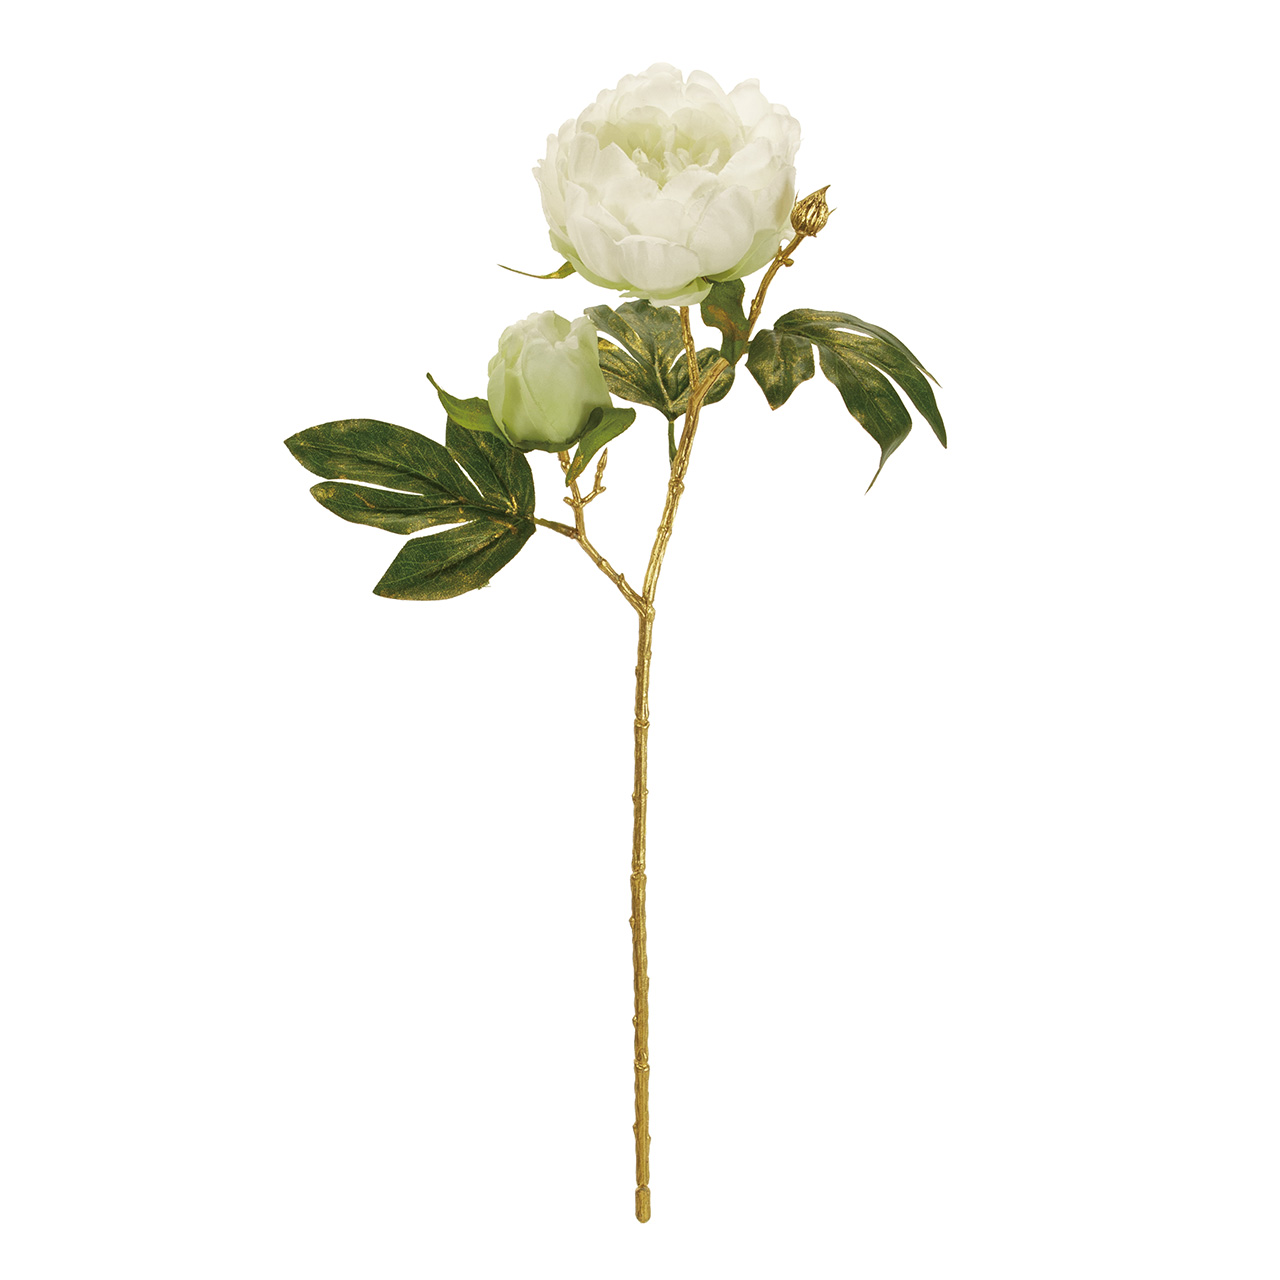 マイフラ 通販 今季完売 Magiq デコーレピオニー クリーム アーティフィシャルフラワー 造花 ピオニー 牡丹 Fj 001 クリーム Magiq アーティフィシャルフラワー 造花 全国にmagiq 花器 花資材などをお届けします